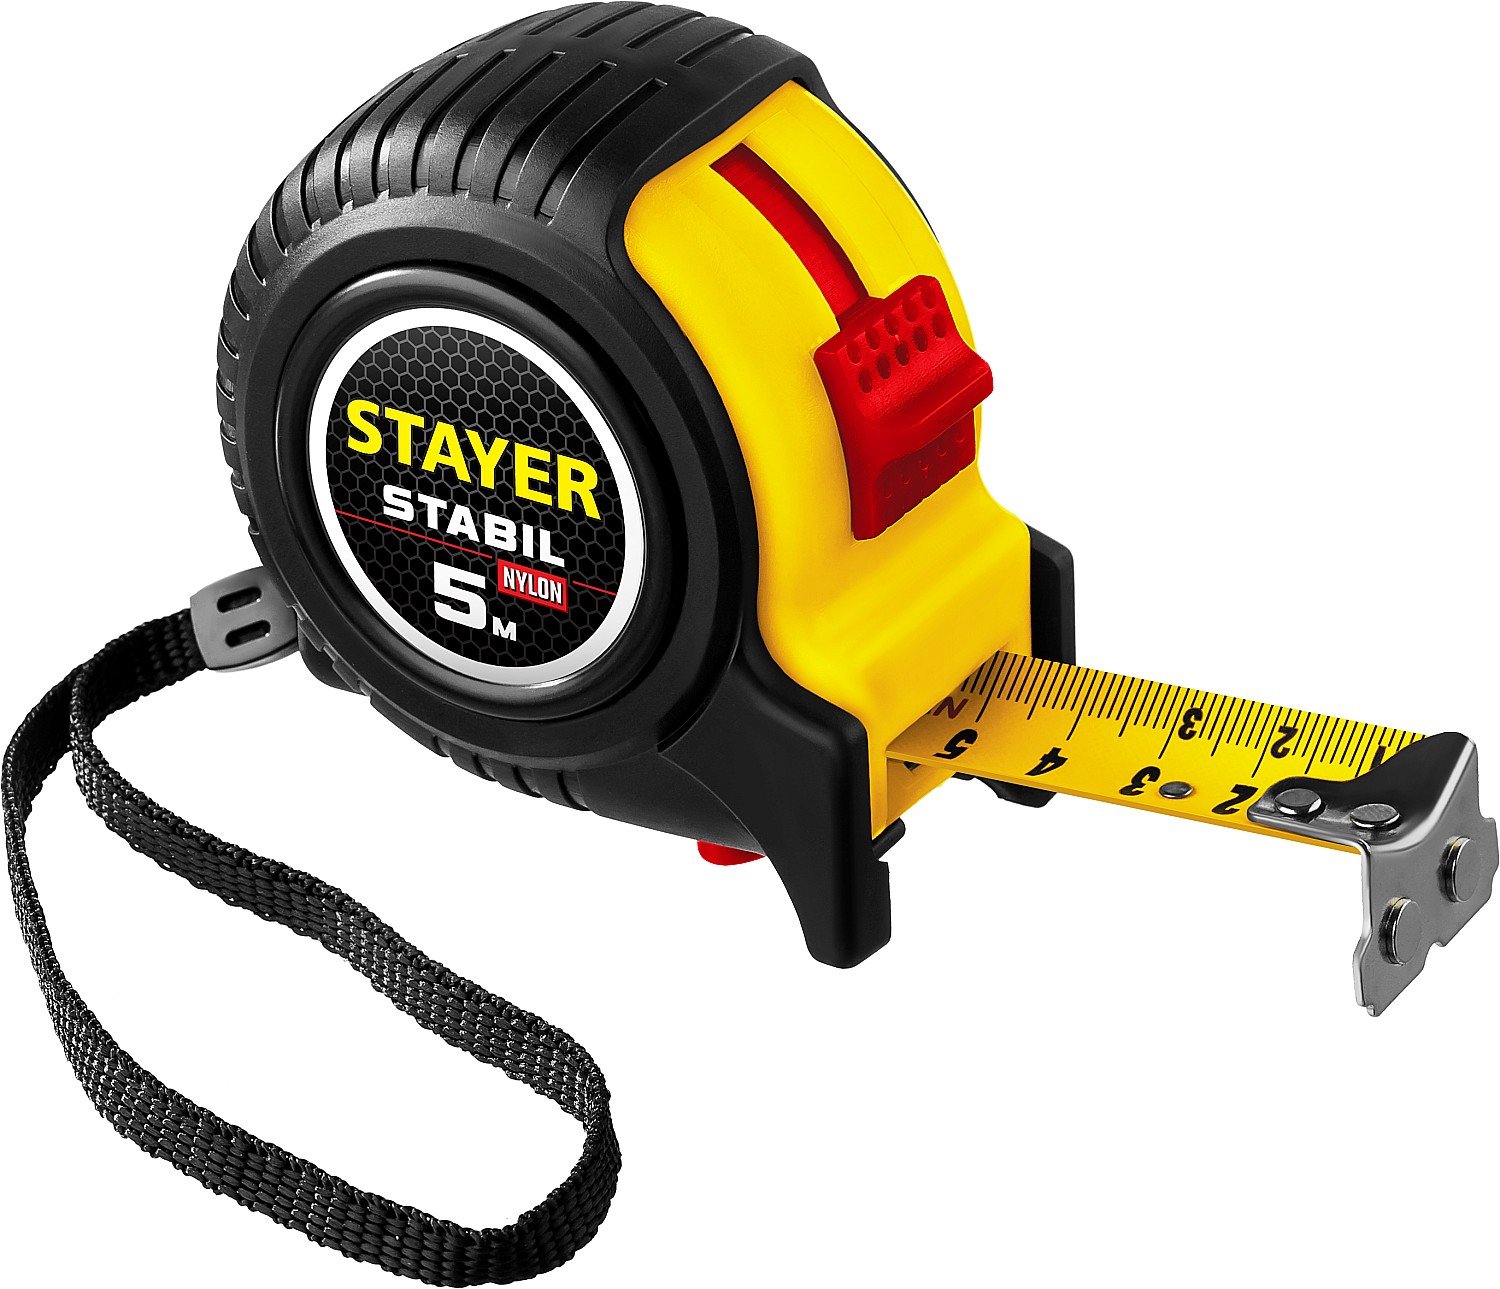      STAYER Stabil 5  25 (34131-05-25_z02)